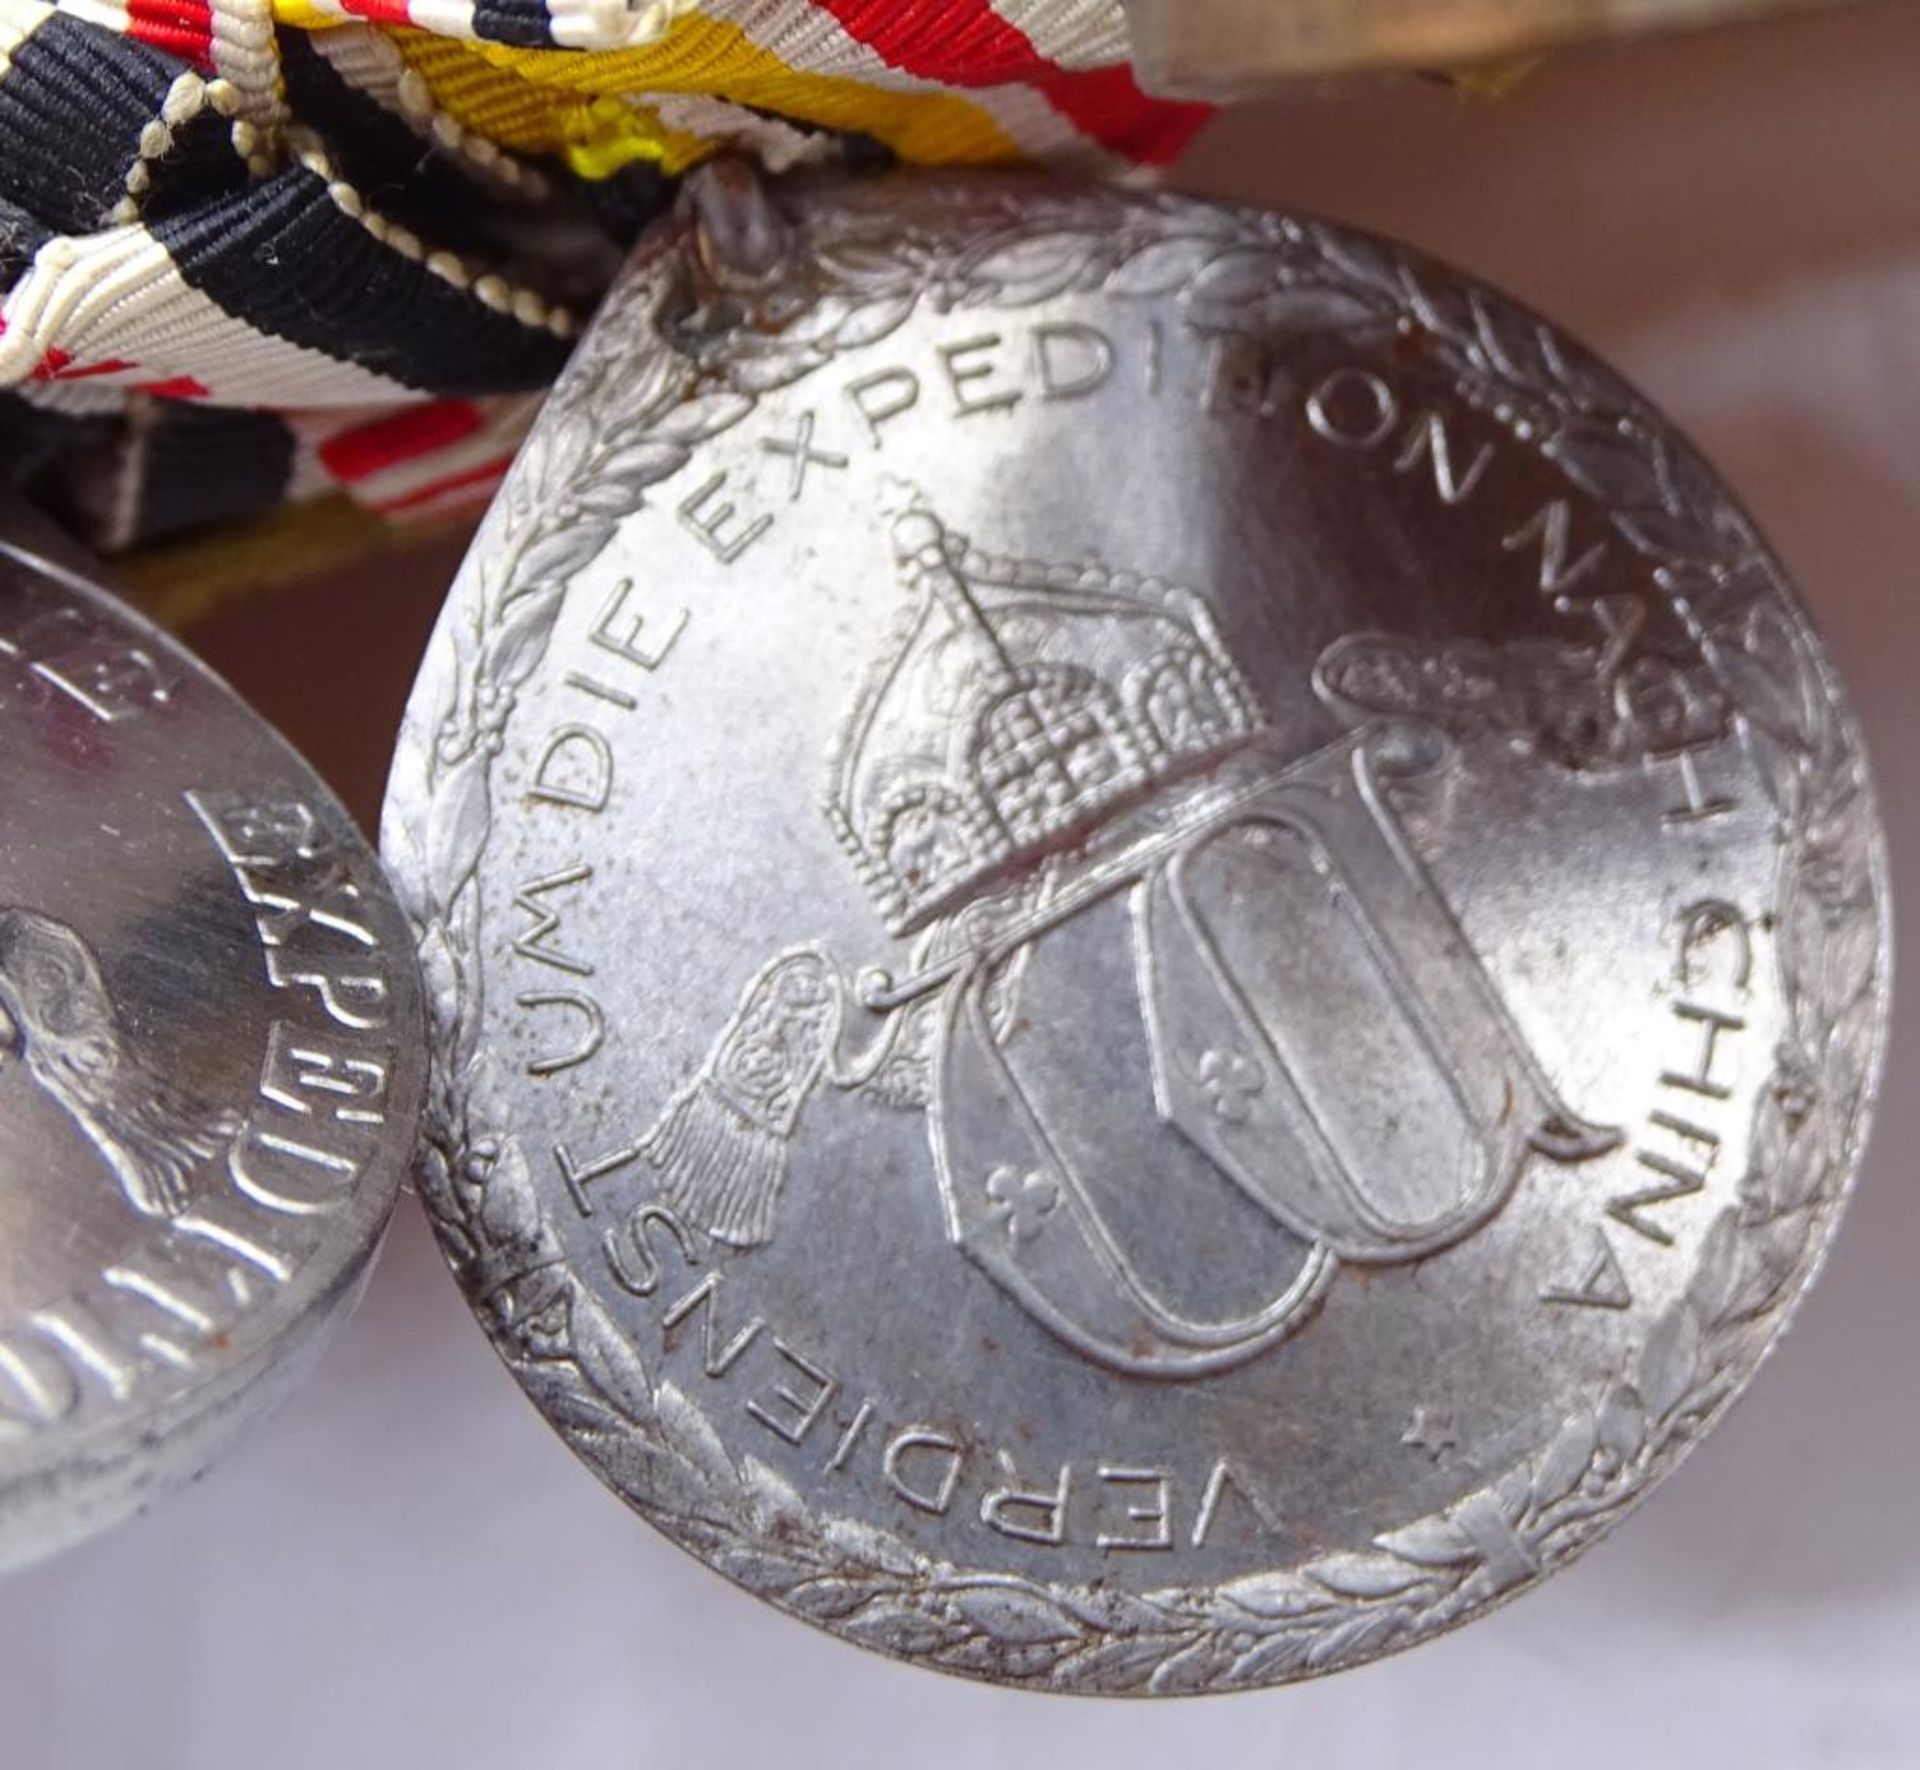 Lange Ordensspange mit 5 Orden/Abzeichen/Medaillen,Königreich Rumänien Orden vom Stern Rumäniens- - Bild 9 aus 10